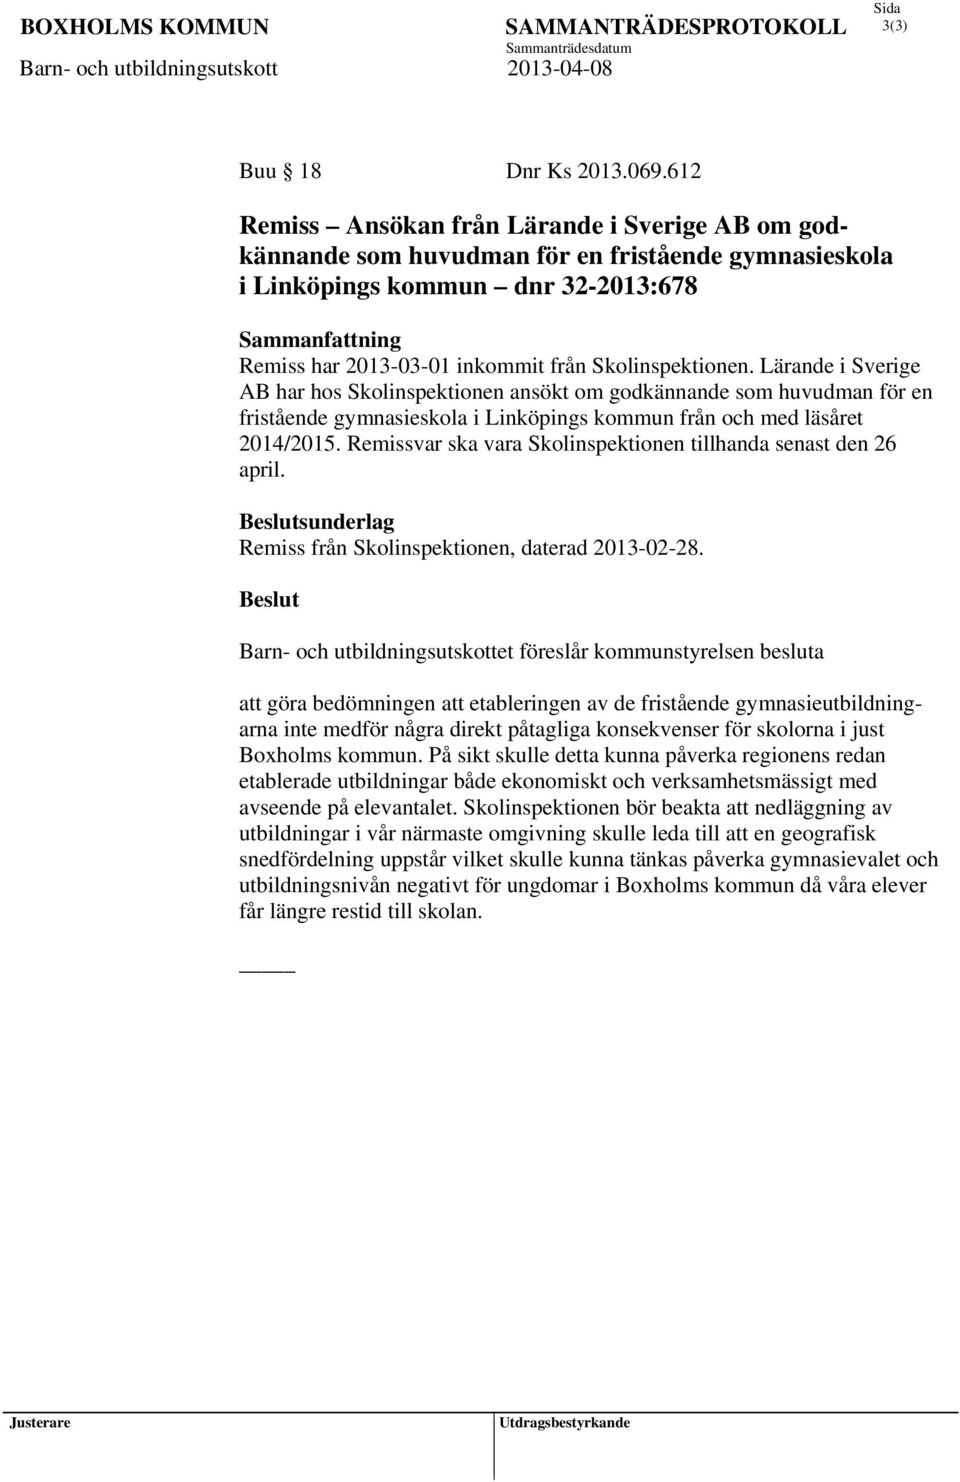 Skolinspektionen. Lärande i Sverige AB har hos Skolinspektionen ansökt om godkännande som huvudman för en fristående gymnasieskola i Linköpings kommun från och med läsåret 2014/2015.